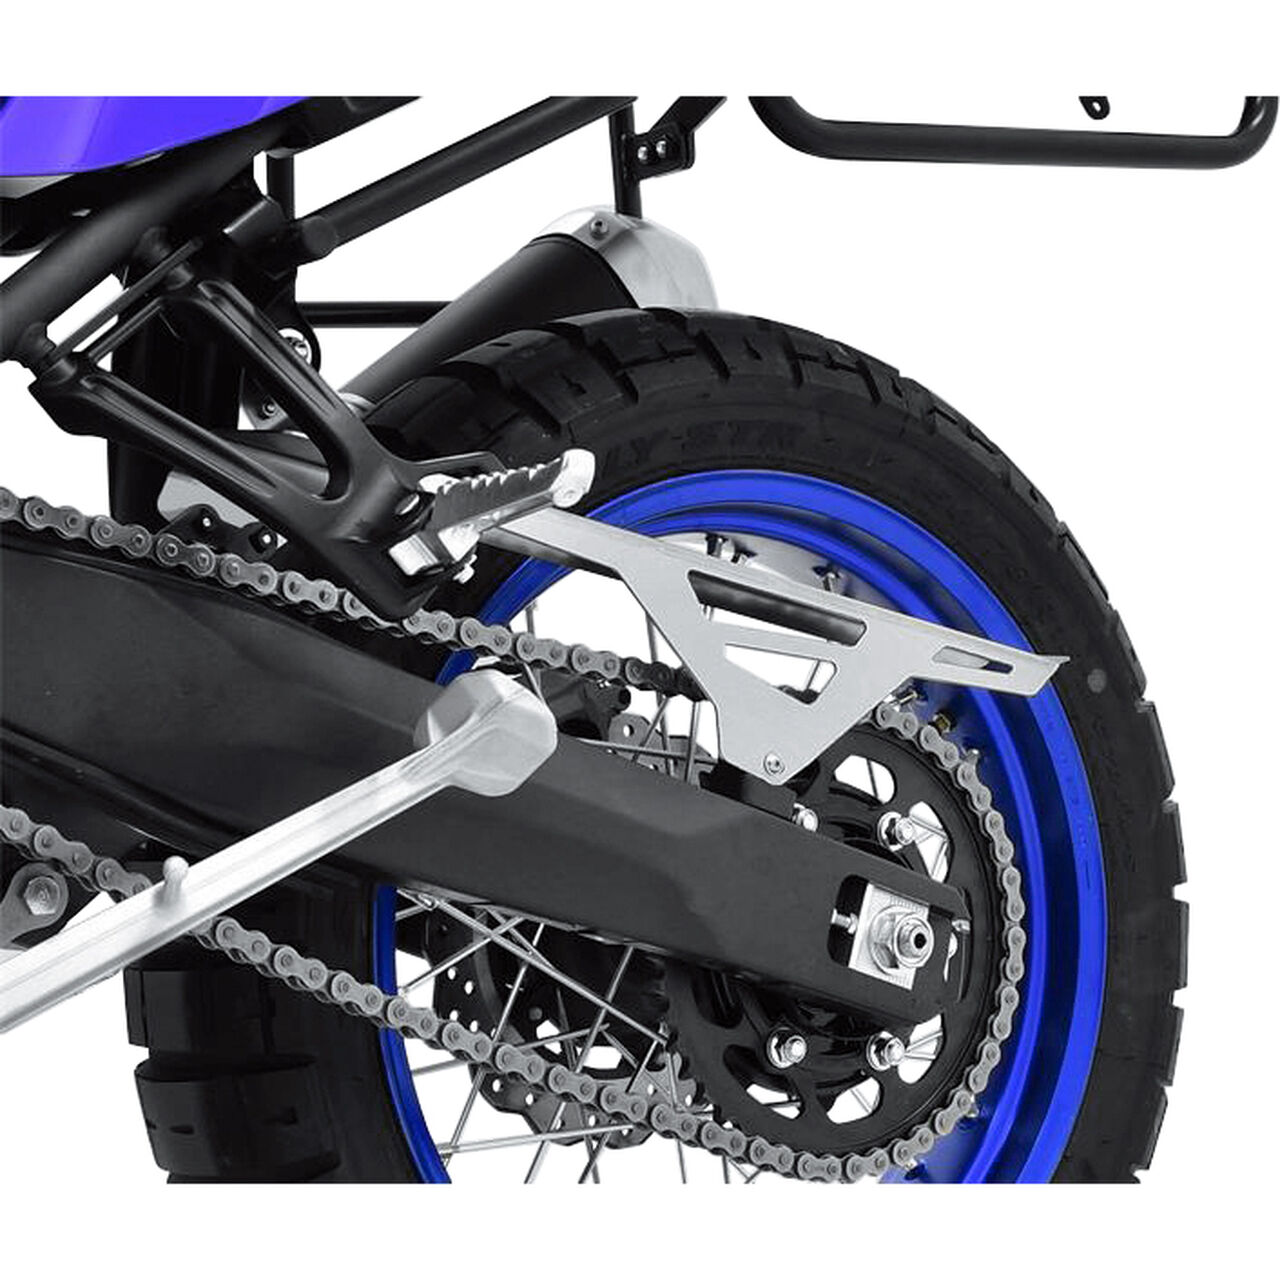 Tenere - Zieger Motorrad 700 Yamaha für POLO silber Schwarz Edelstahl Kettenschutz kaufen